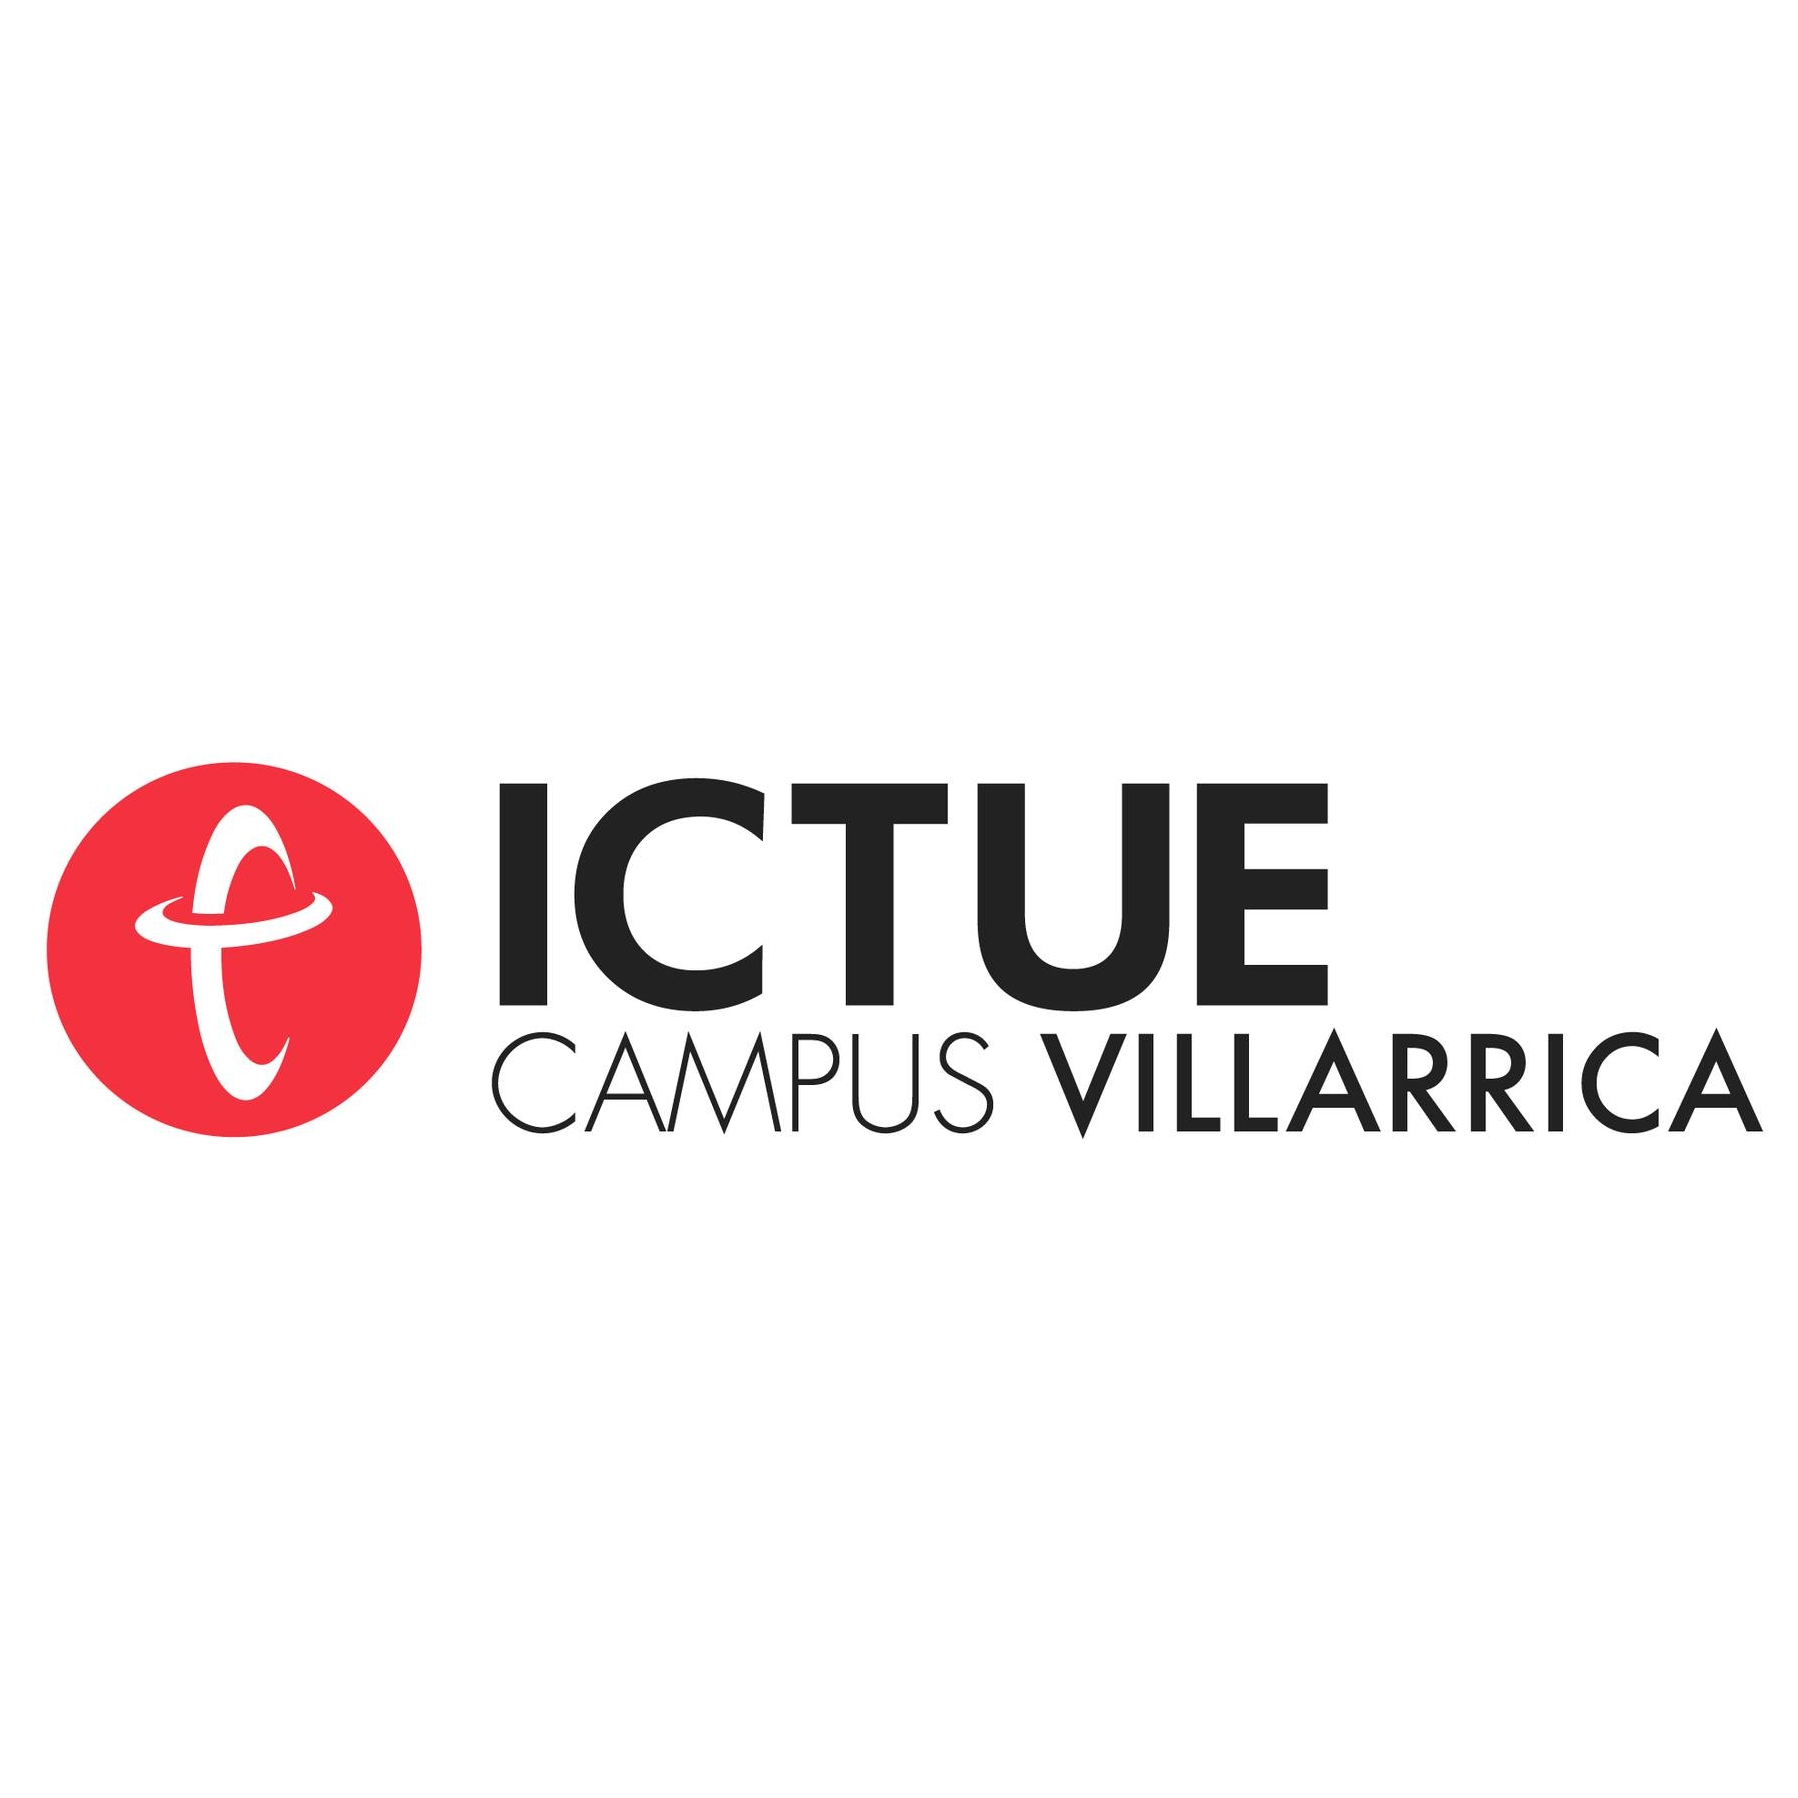 Ictue Campus Villarrica Radio